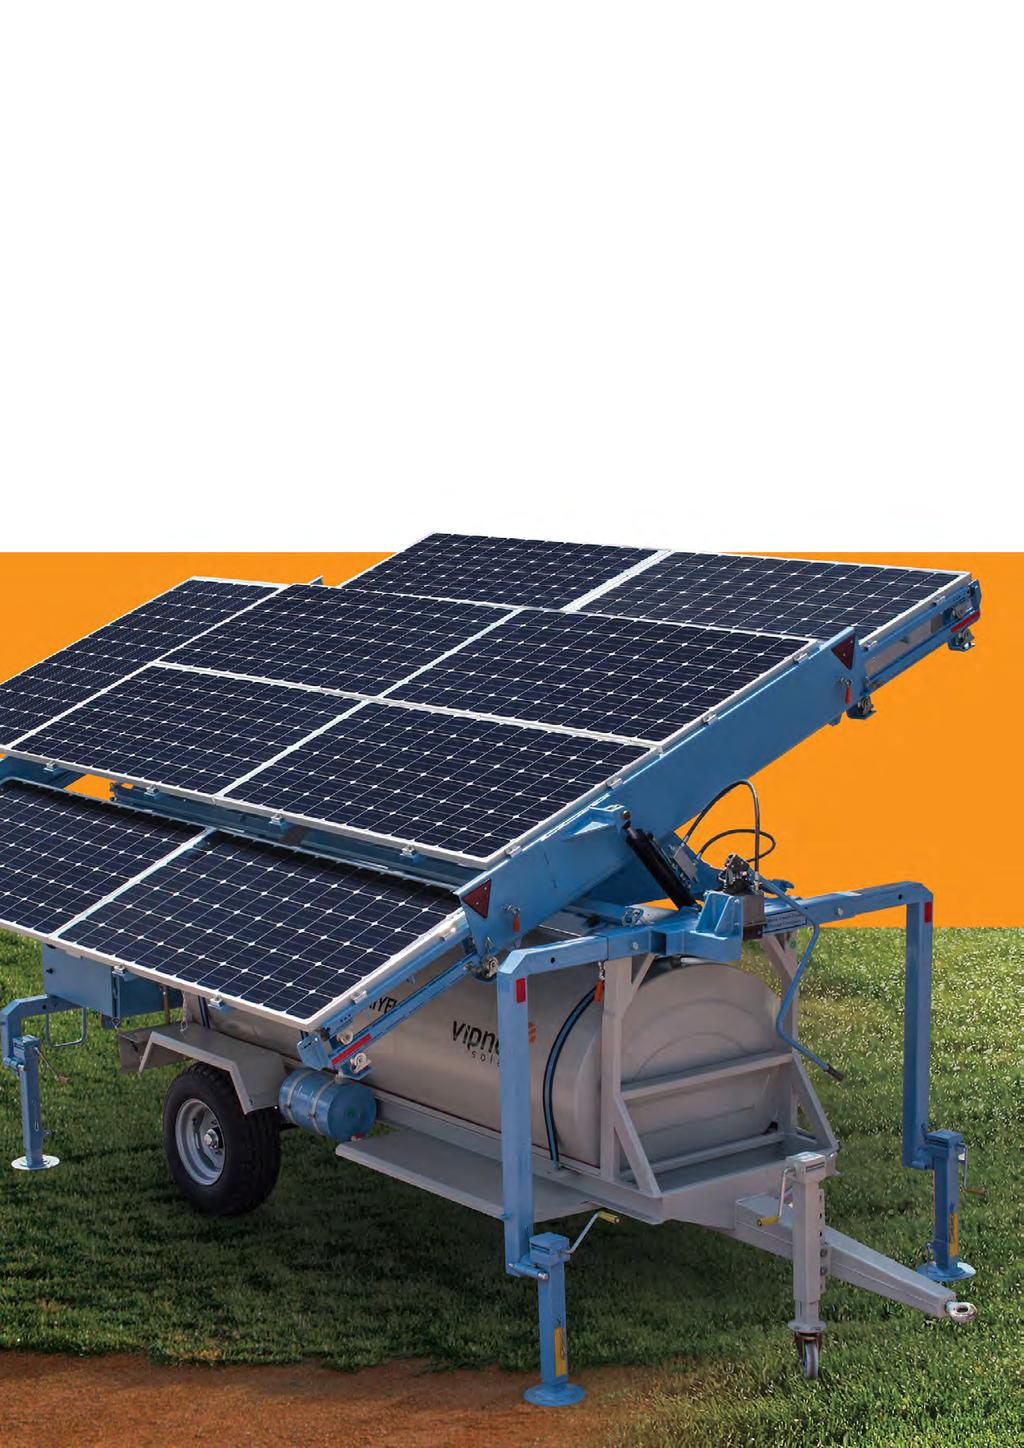 Zirai sulama ihtiyaçlarınız ve enerji gereksiminiz için yepyeni bir yaklaşım A Brand New Approach For Your Agricultural Irrigation and Energy Needs SU VE ENERJI DEPOLAMALI MOBIL SOLAR SISTEM MOBILE